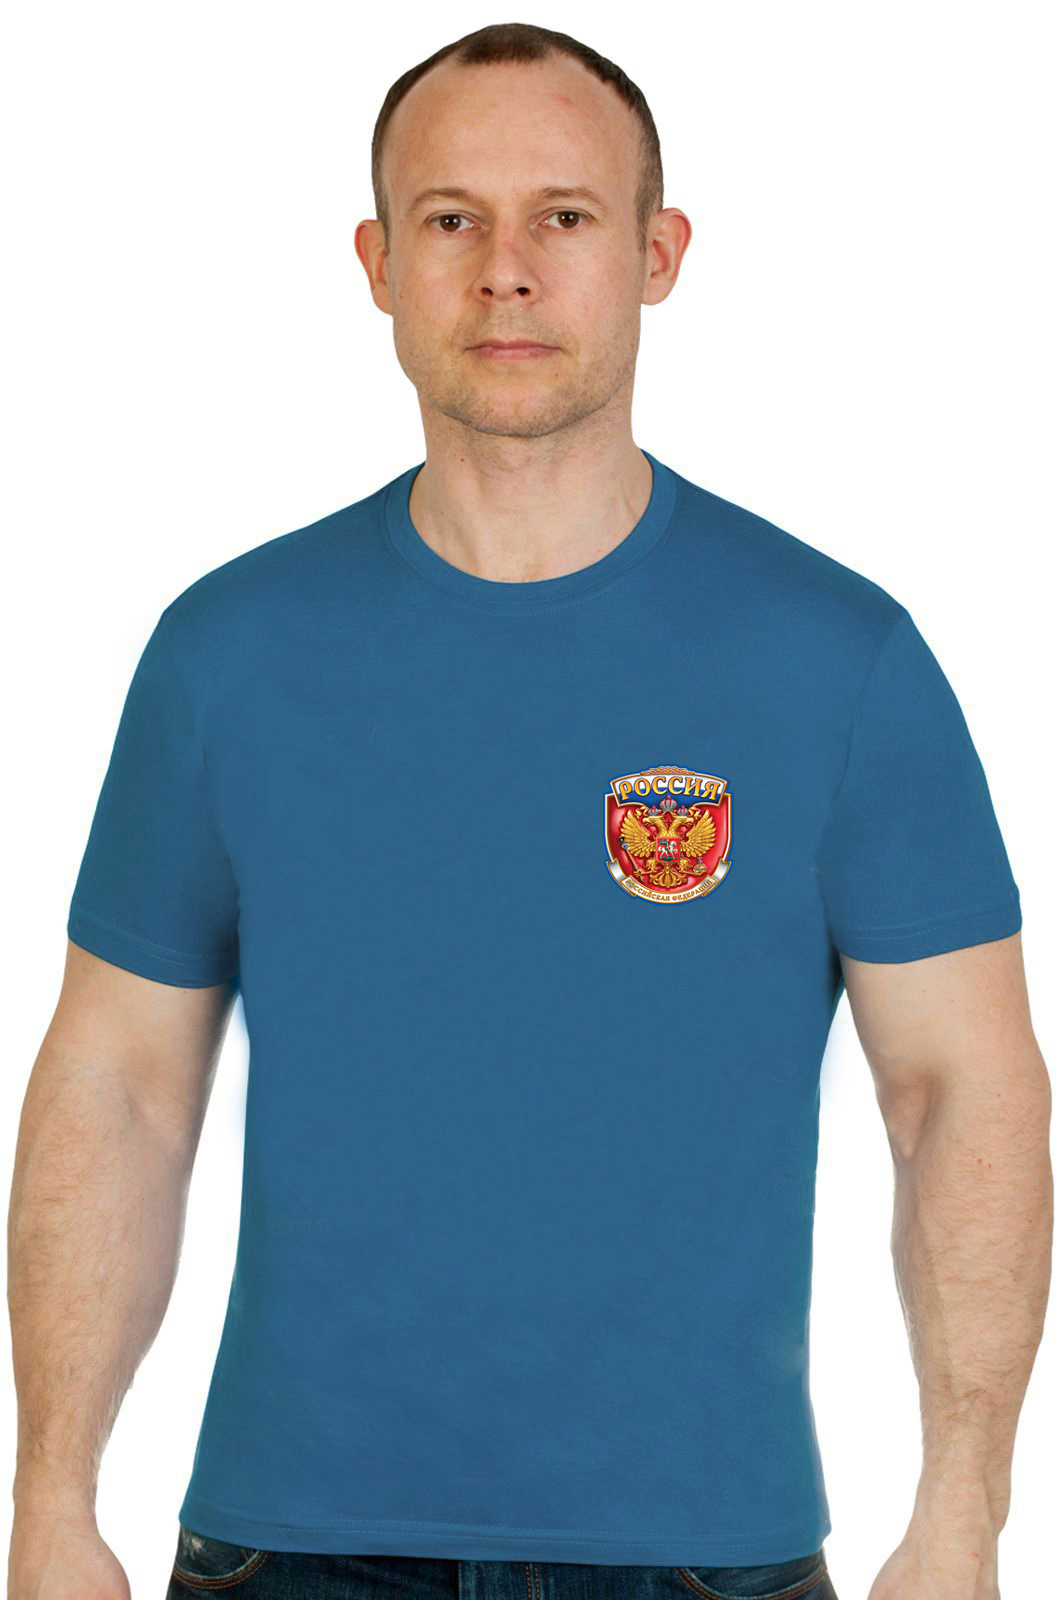 Патриотическая футболка с символикой Россия. 